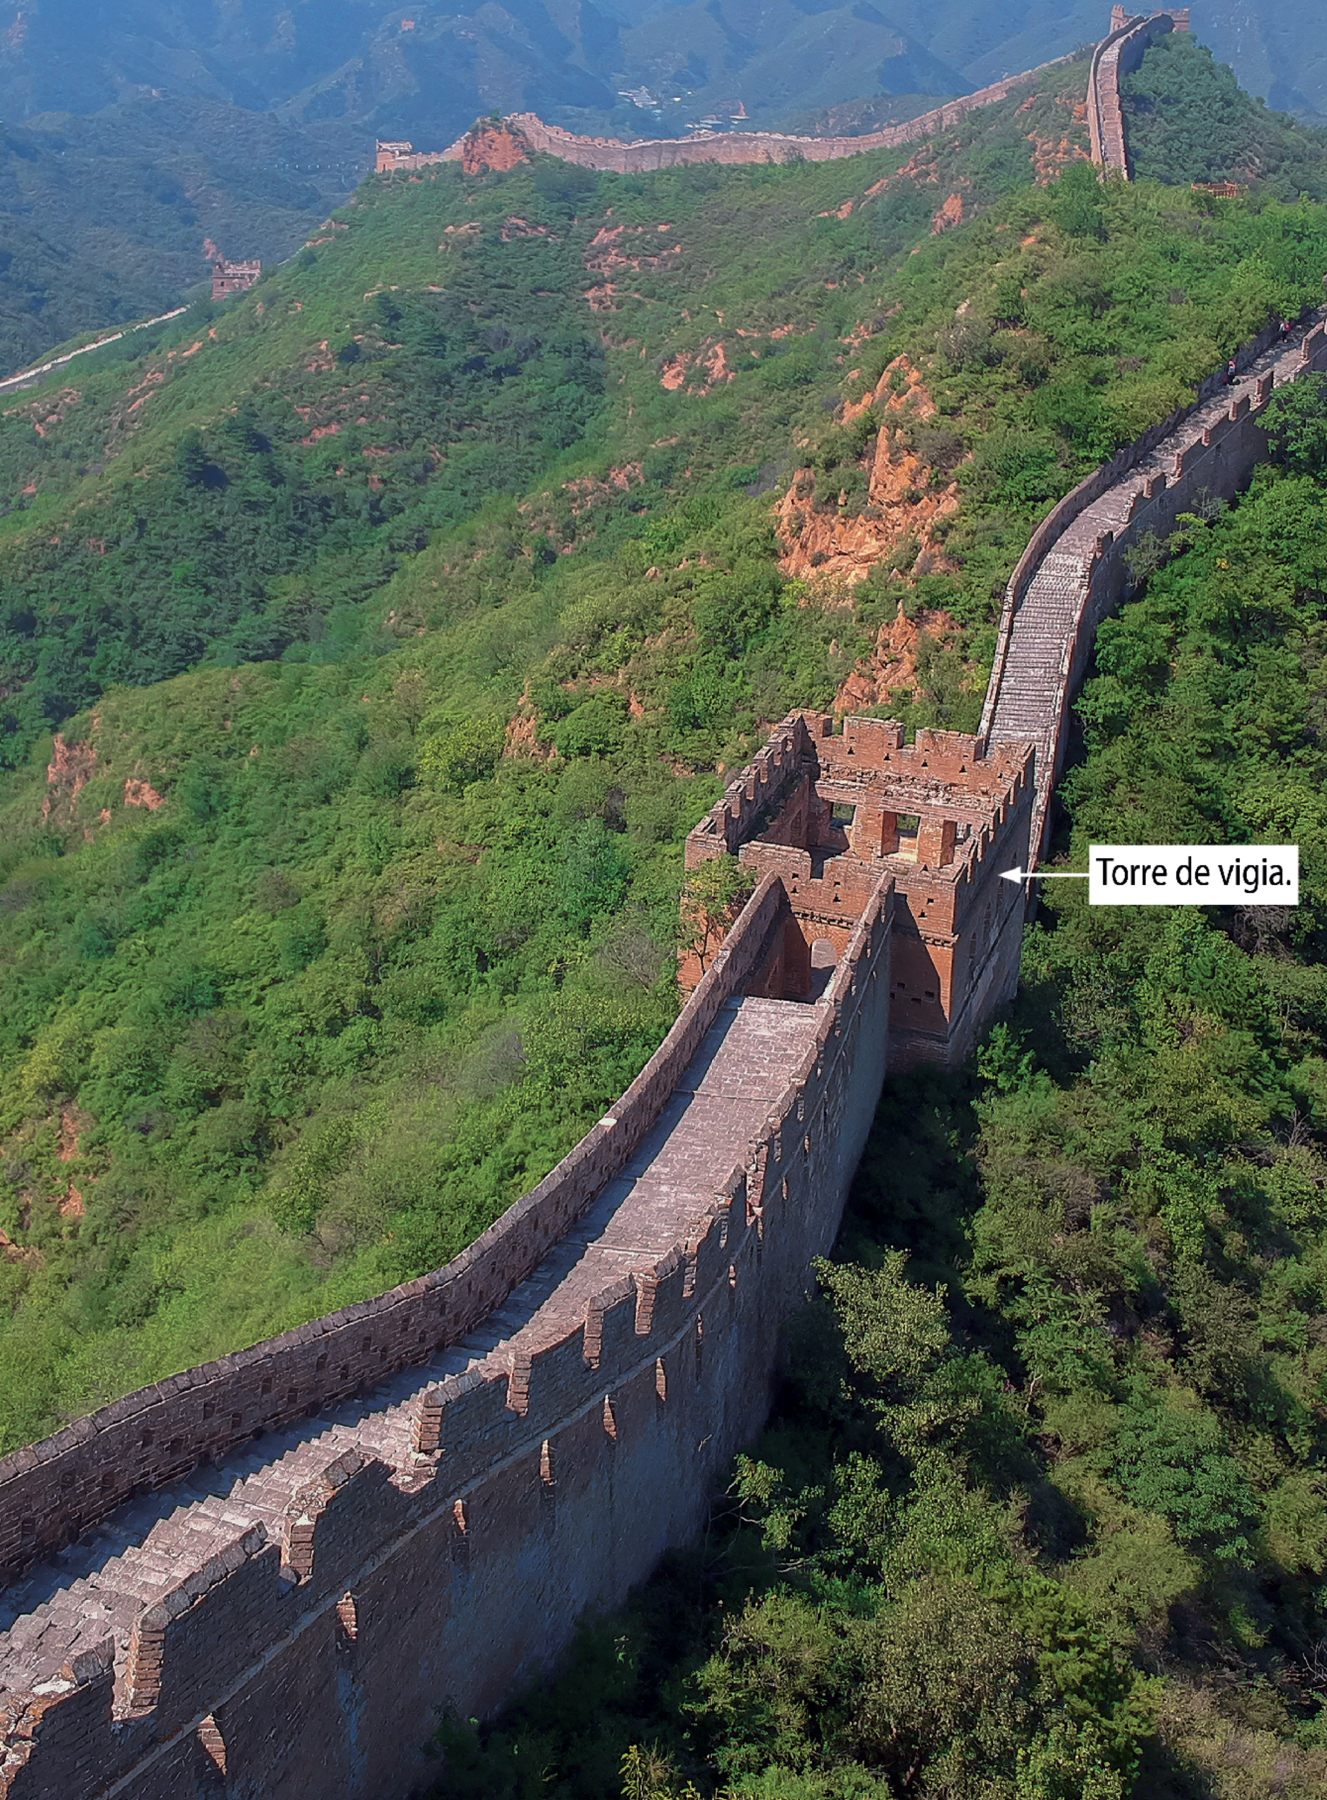 Fotografia. vista aérea parcial da Grande Muralha, China, em 2017. Com destaque para a torre de vigia, sem cobertura, feita de tijolos, com formato da base parecida com um quadrilátero.